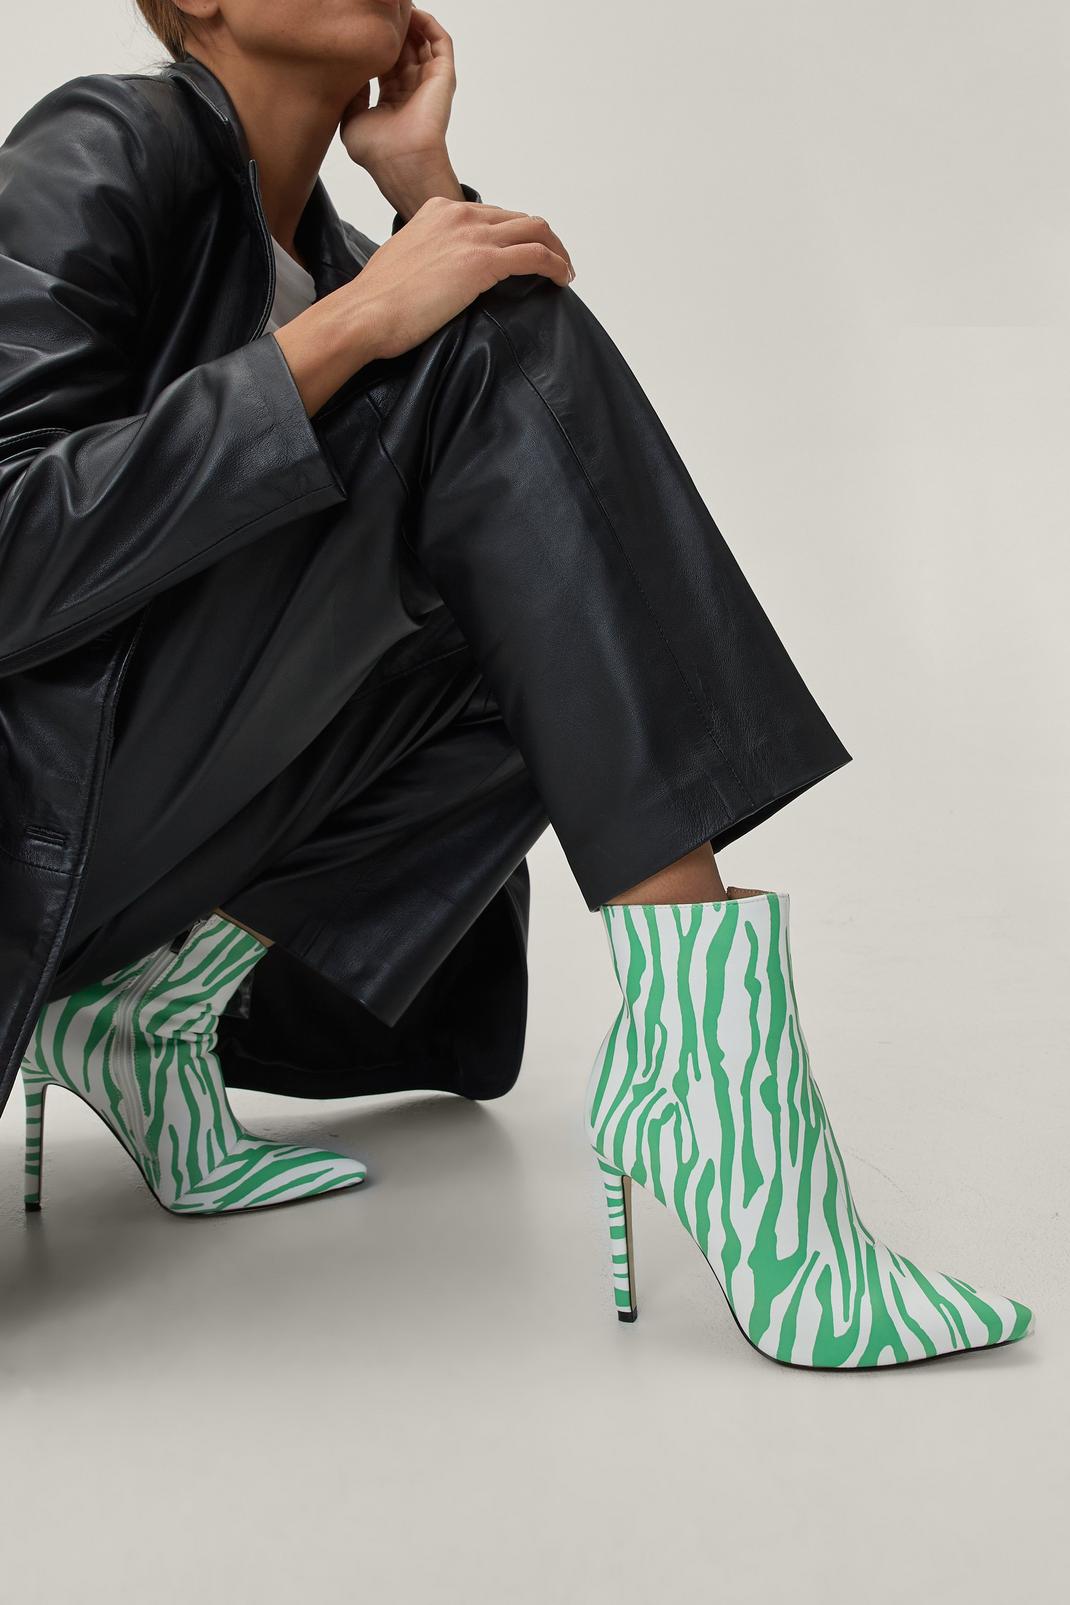 Green Zebra Print Stiletto Boots